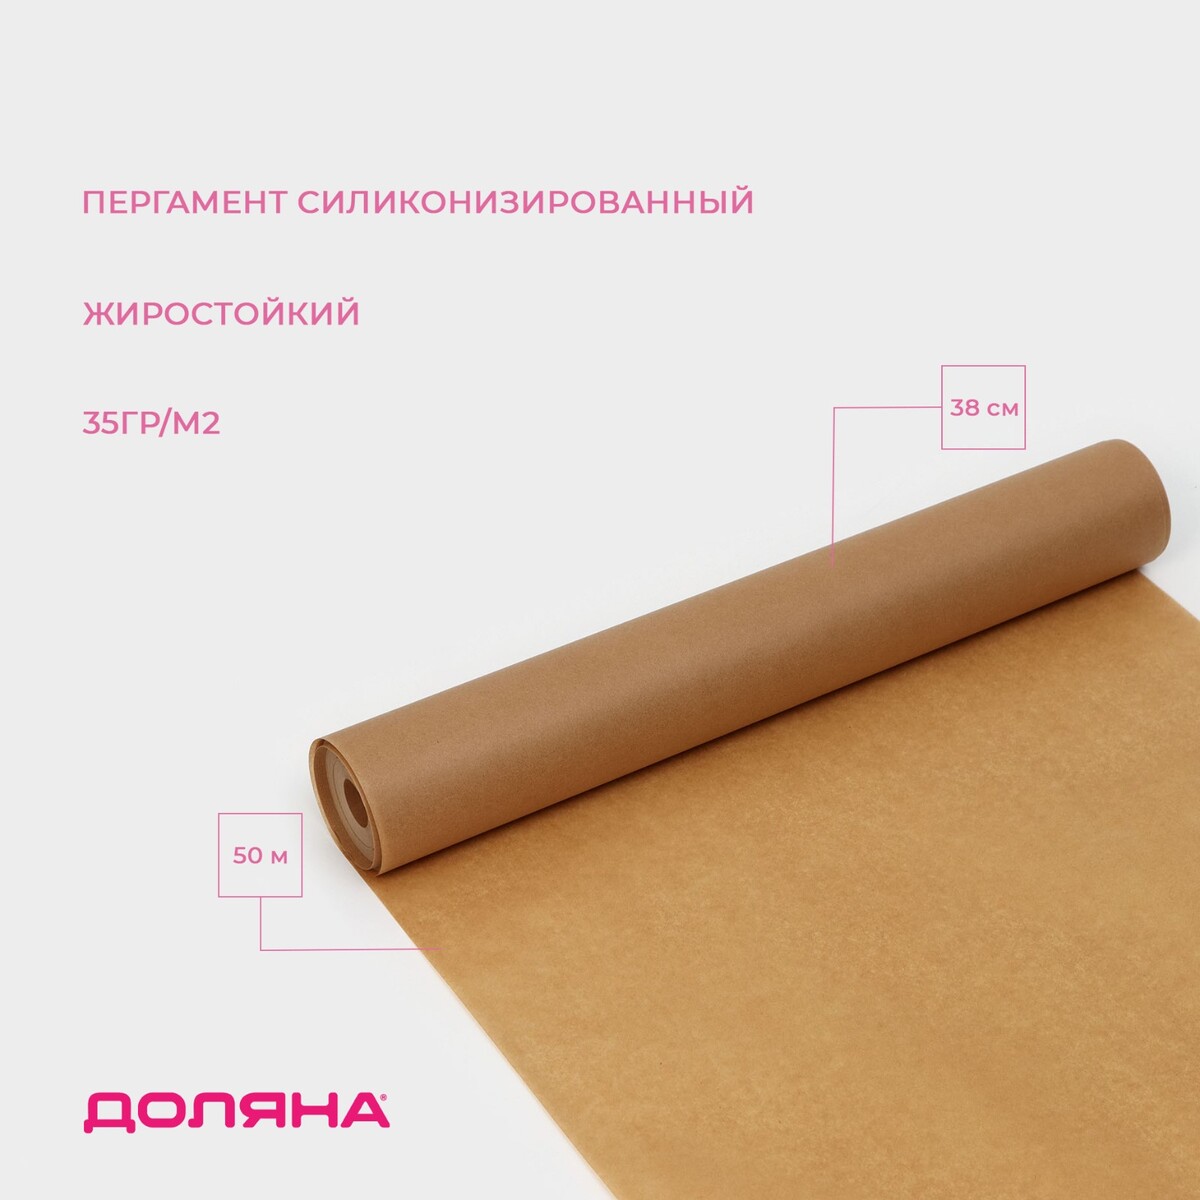 Пергамент силиконизированный доляна, 38 см х 50 м, коричневый, жиростойкий пергамент силиконизированный доляна 28 см×25 м белый жиростойкий